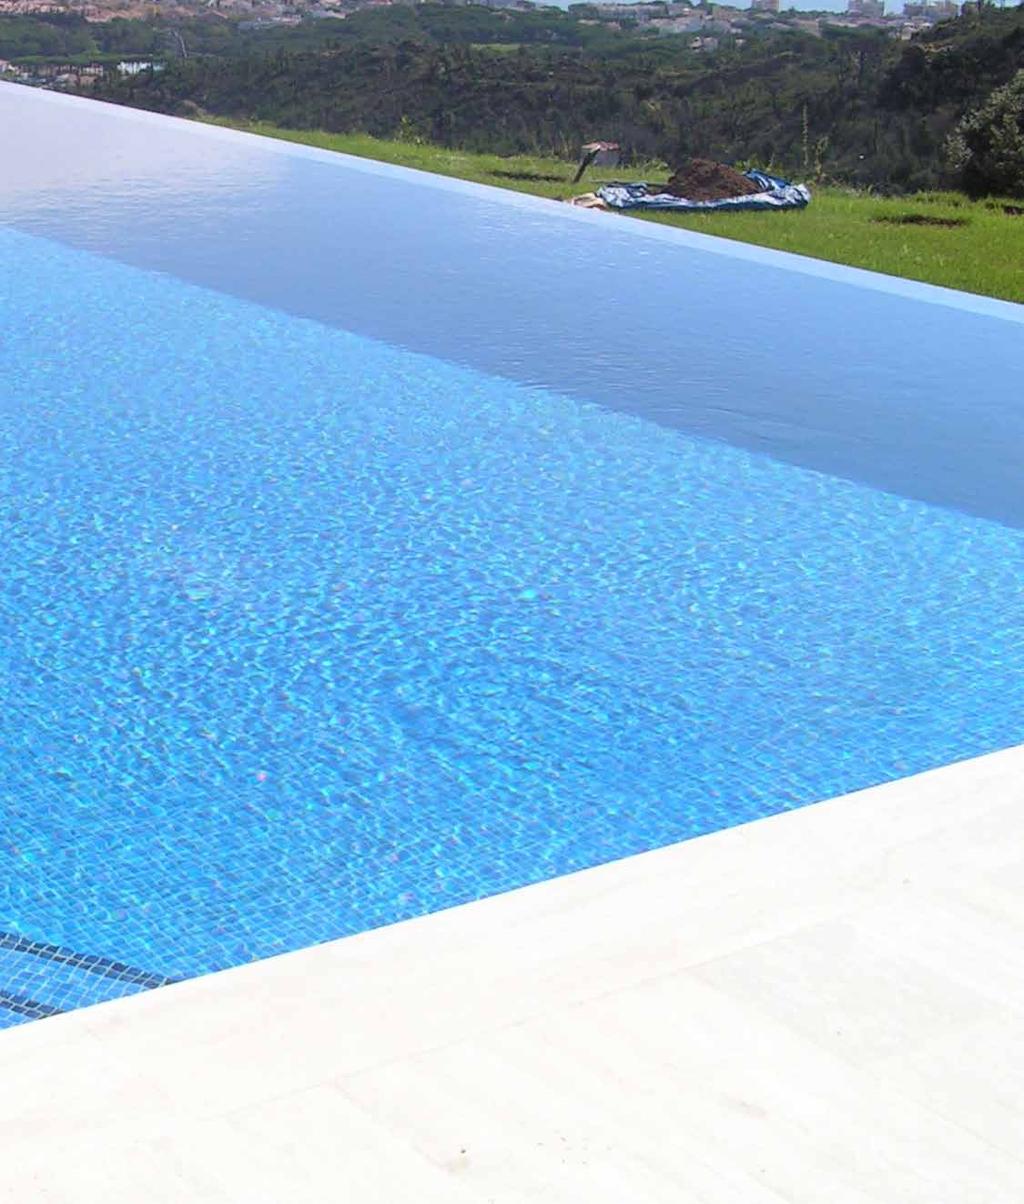 Piscines Sant Feliu és una empresa constructora de piscines de formigó projectat, el denominat comercialment com Gunite.